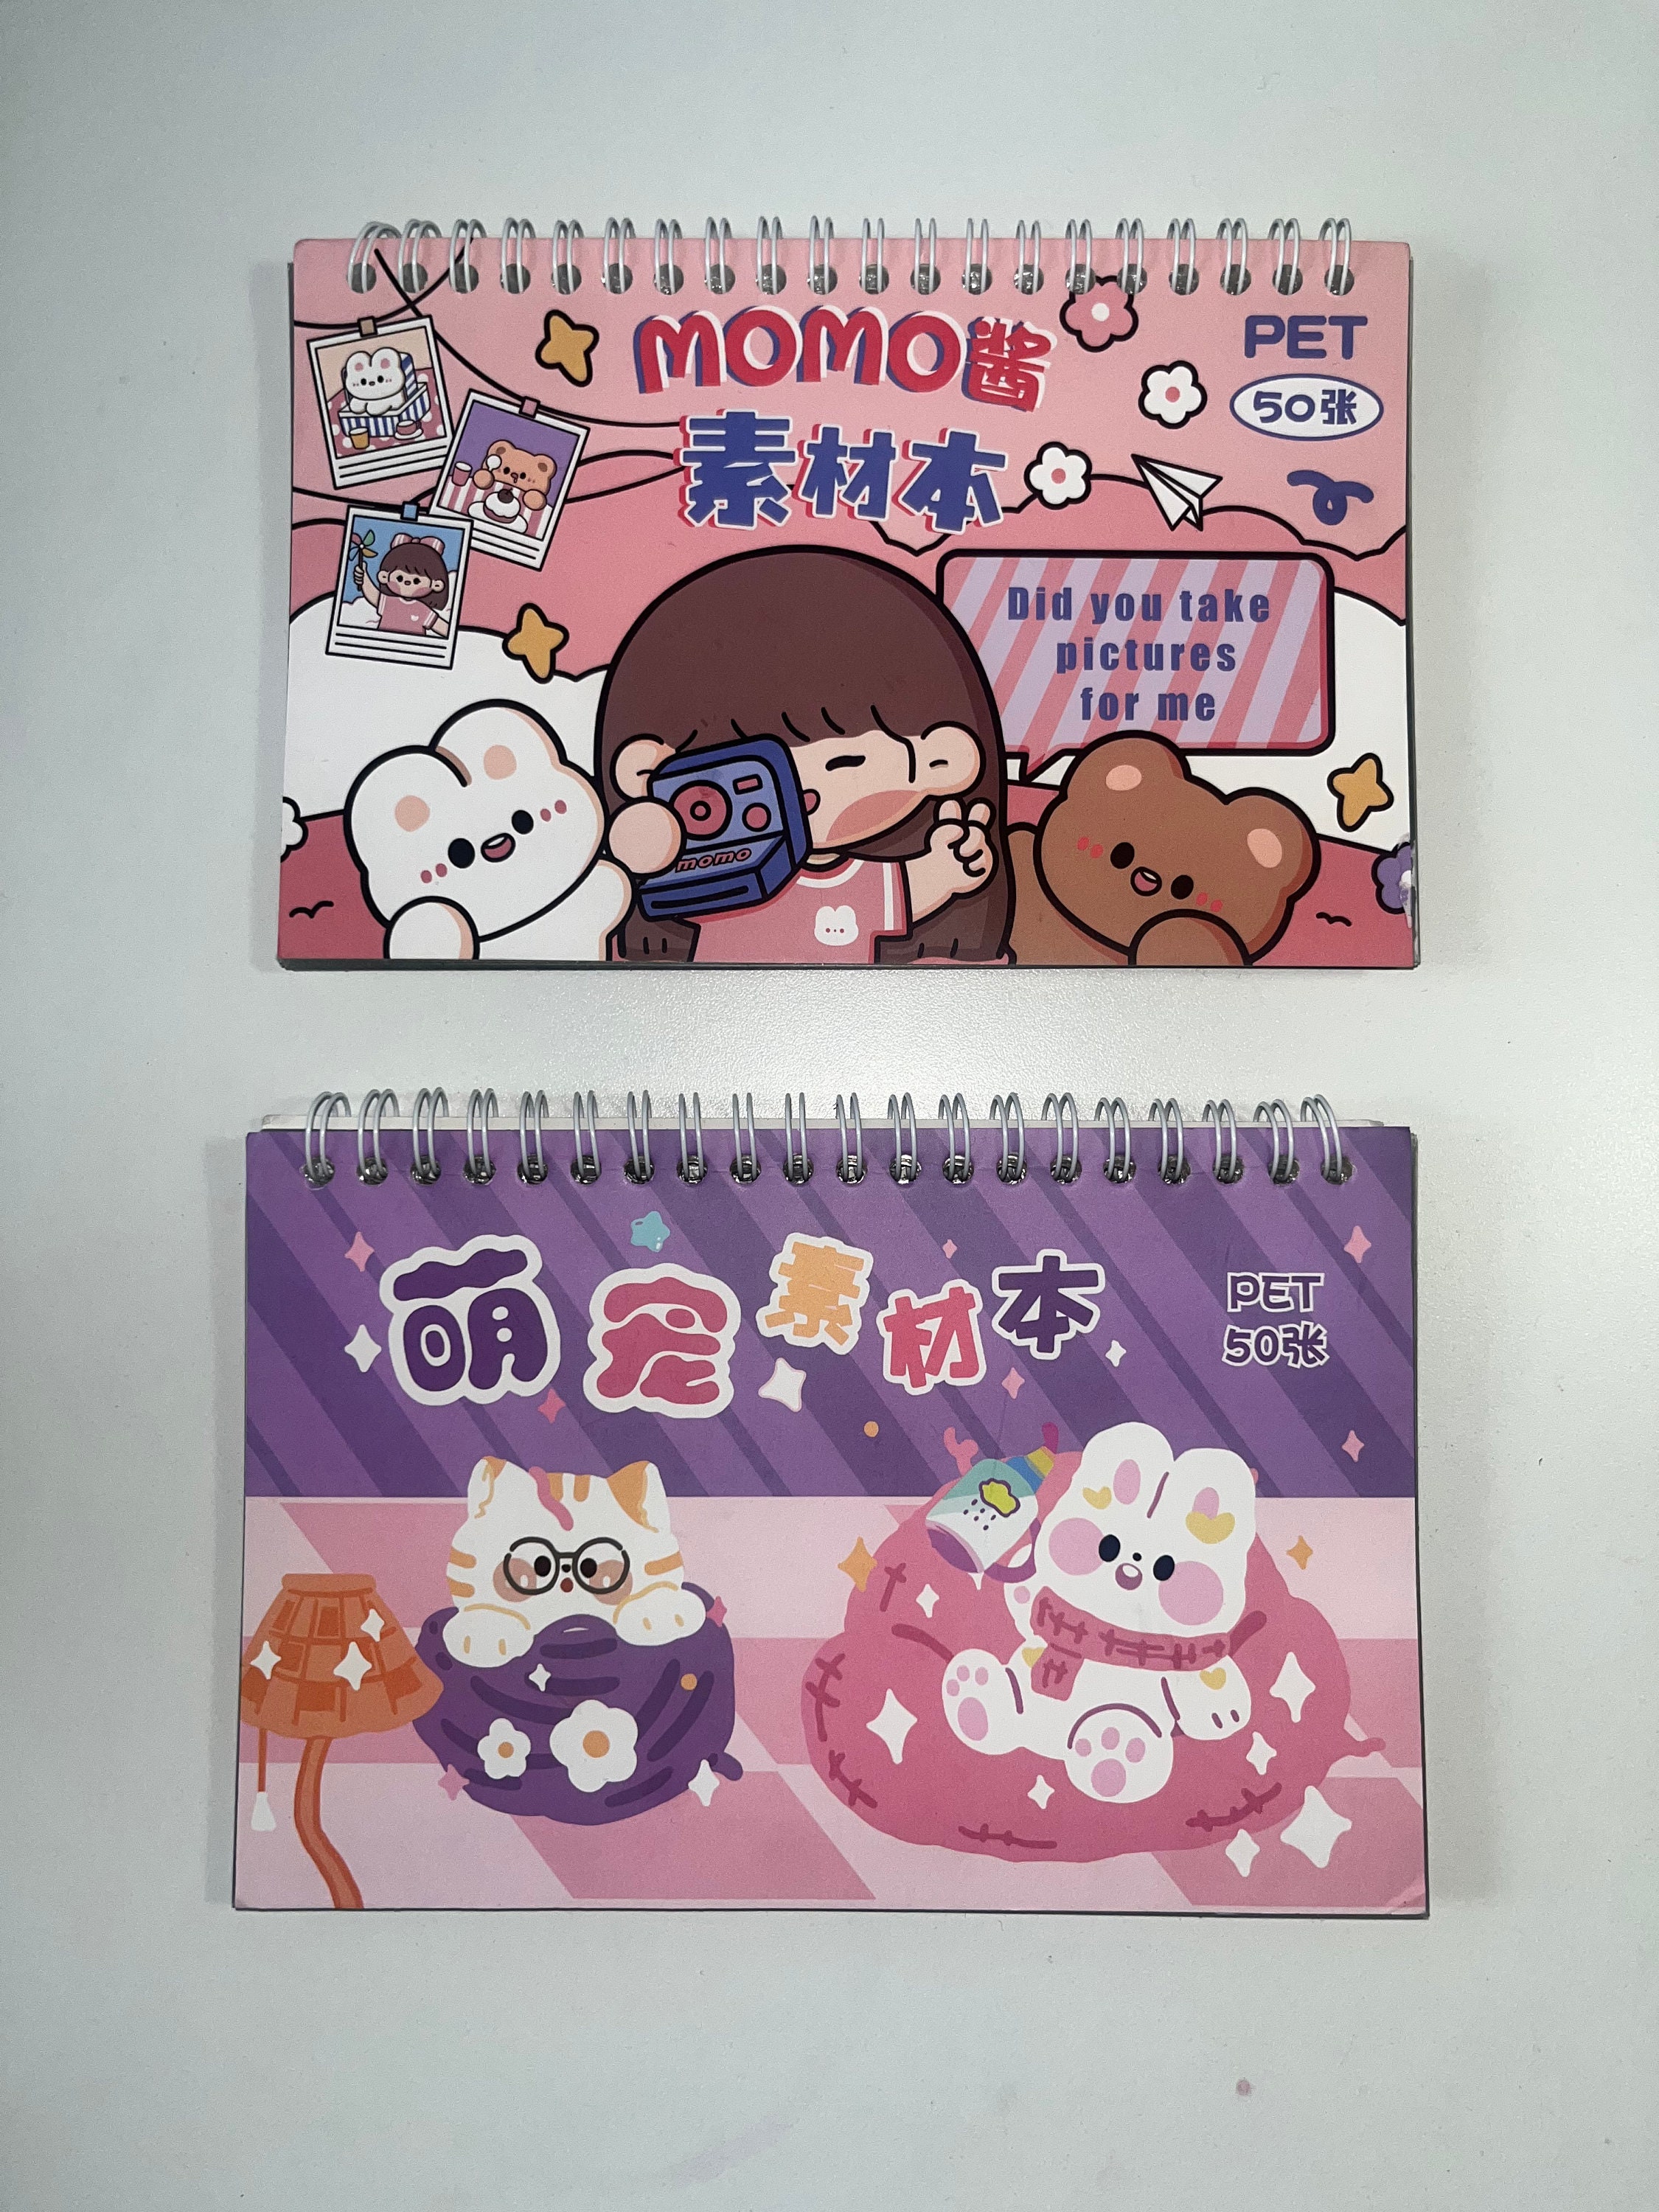 Book Nook  Bujo Sticker Kit – Planner Bunny Press